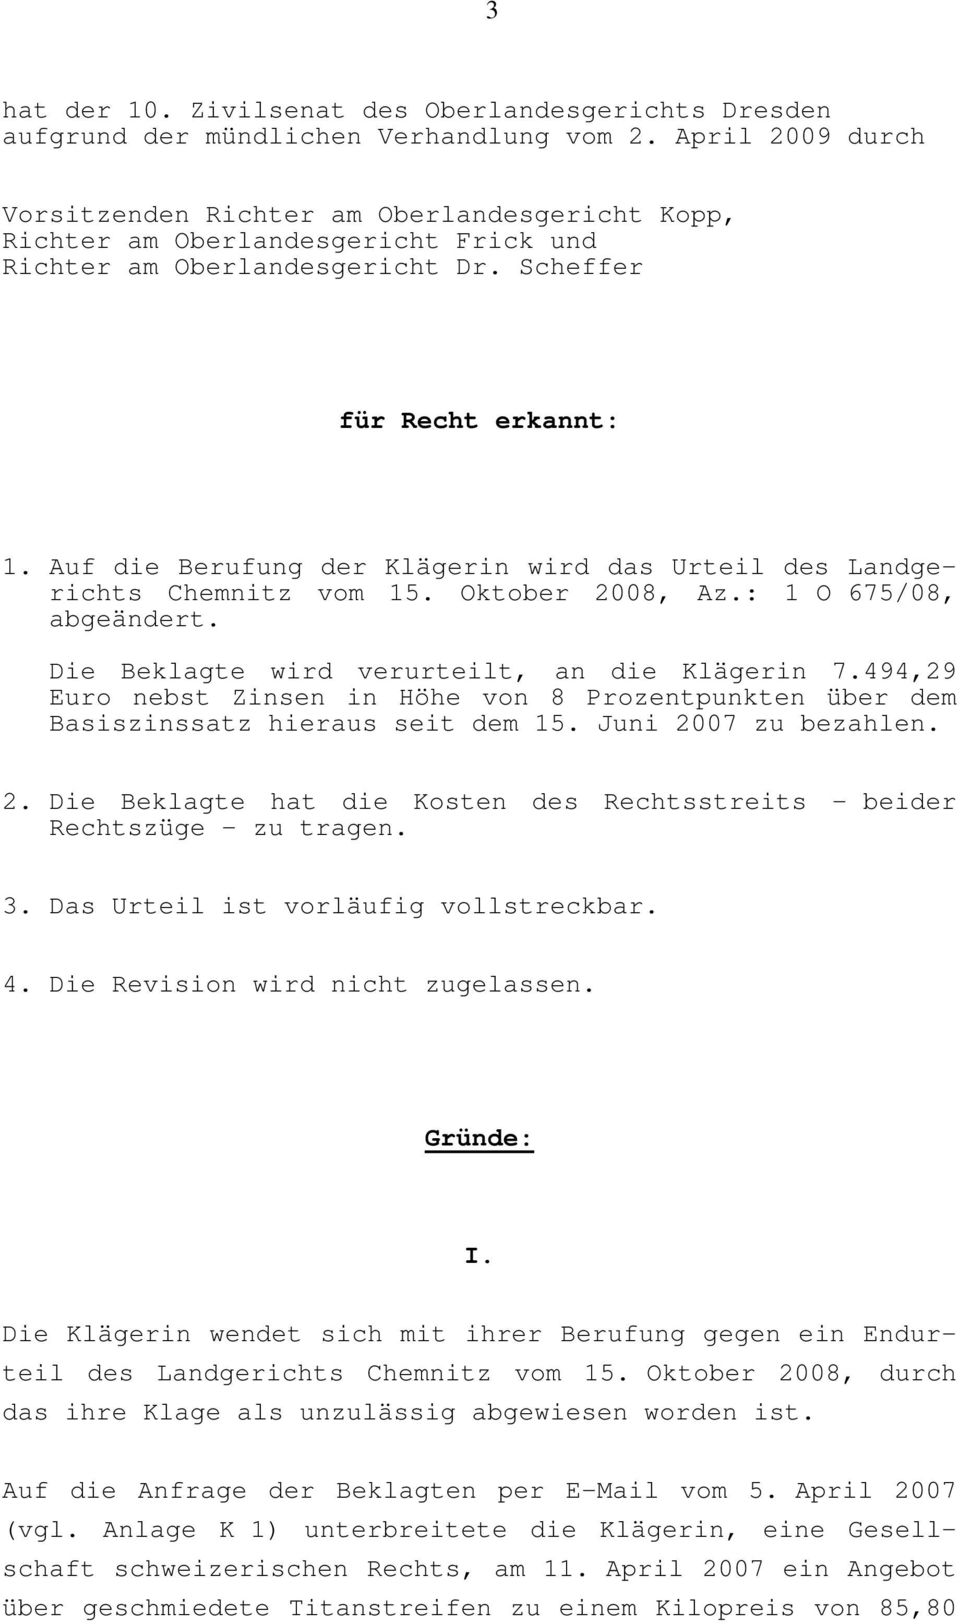 Auf die Berufung der Klägerin wird das Urteil des Landgerichts Chemnitz vom 15. Oktober 2008, Az.: 1 O 675/08, abgeändert. Die Beklagte wird verurteilt, an die Klägerin 7.